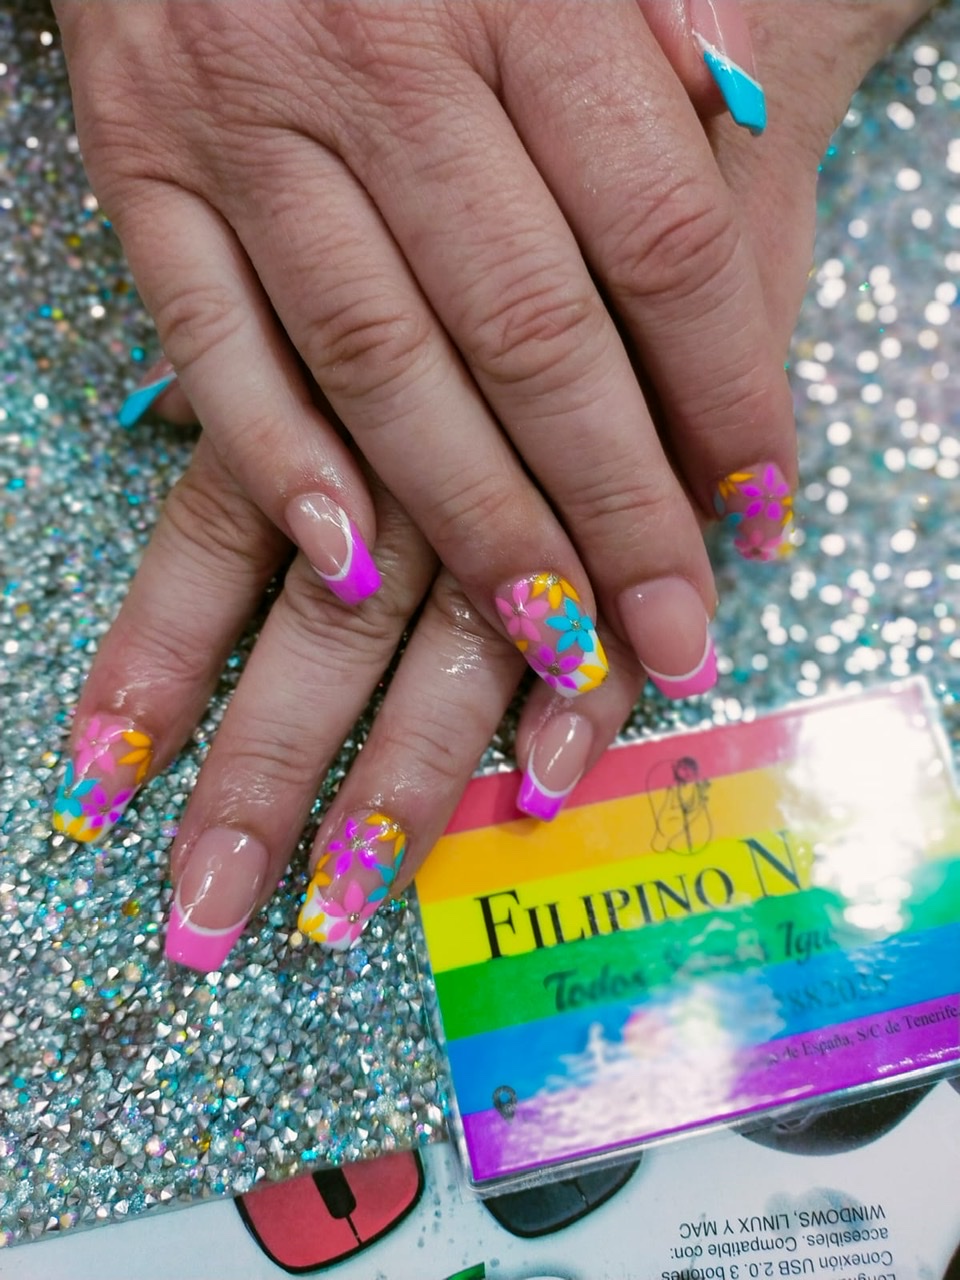 Images Filipino Nails